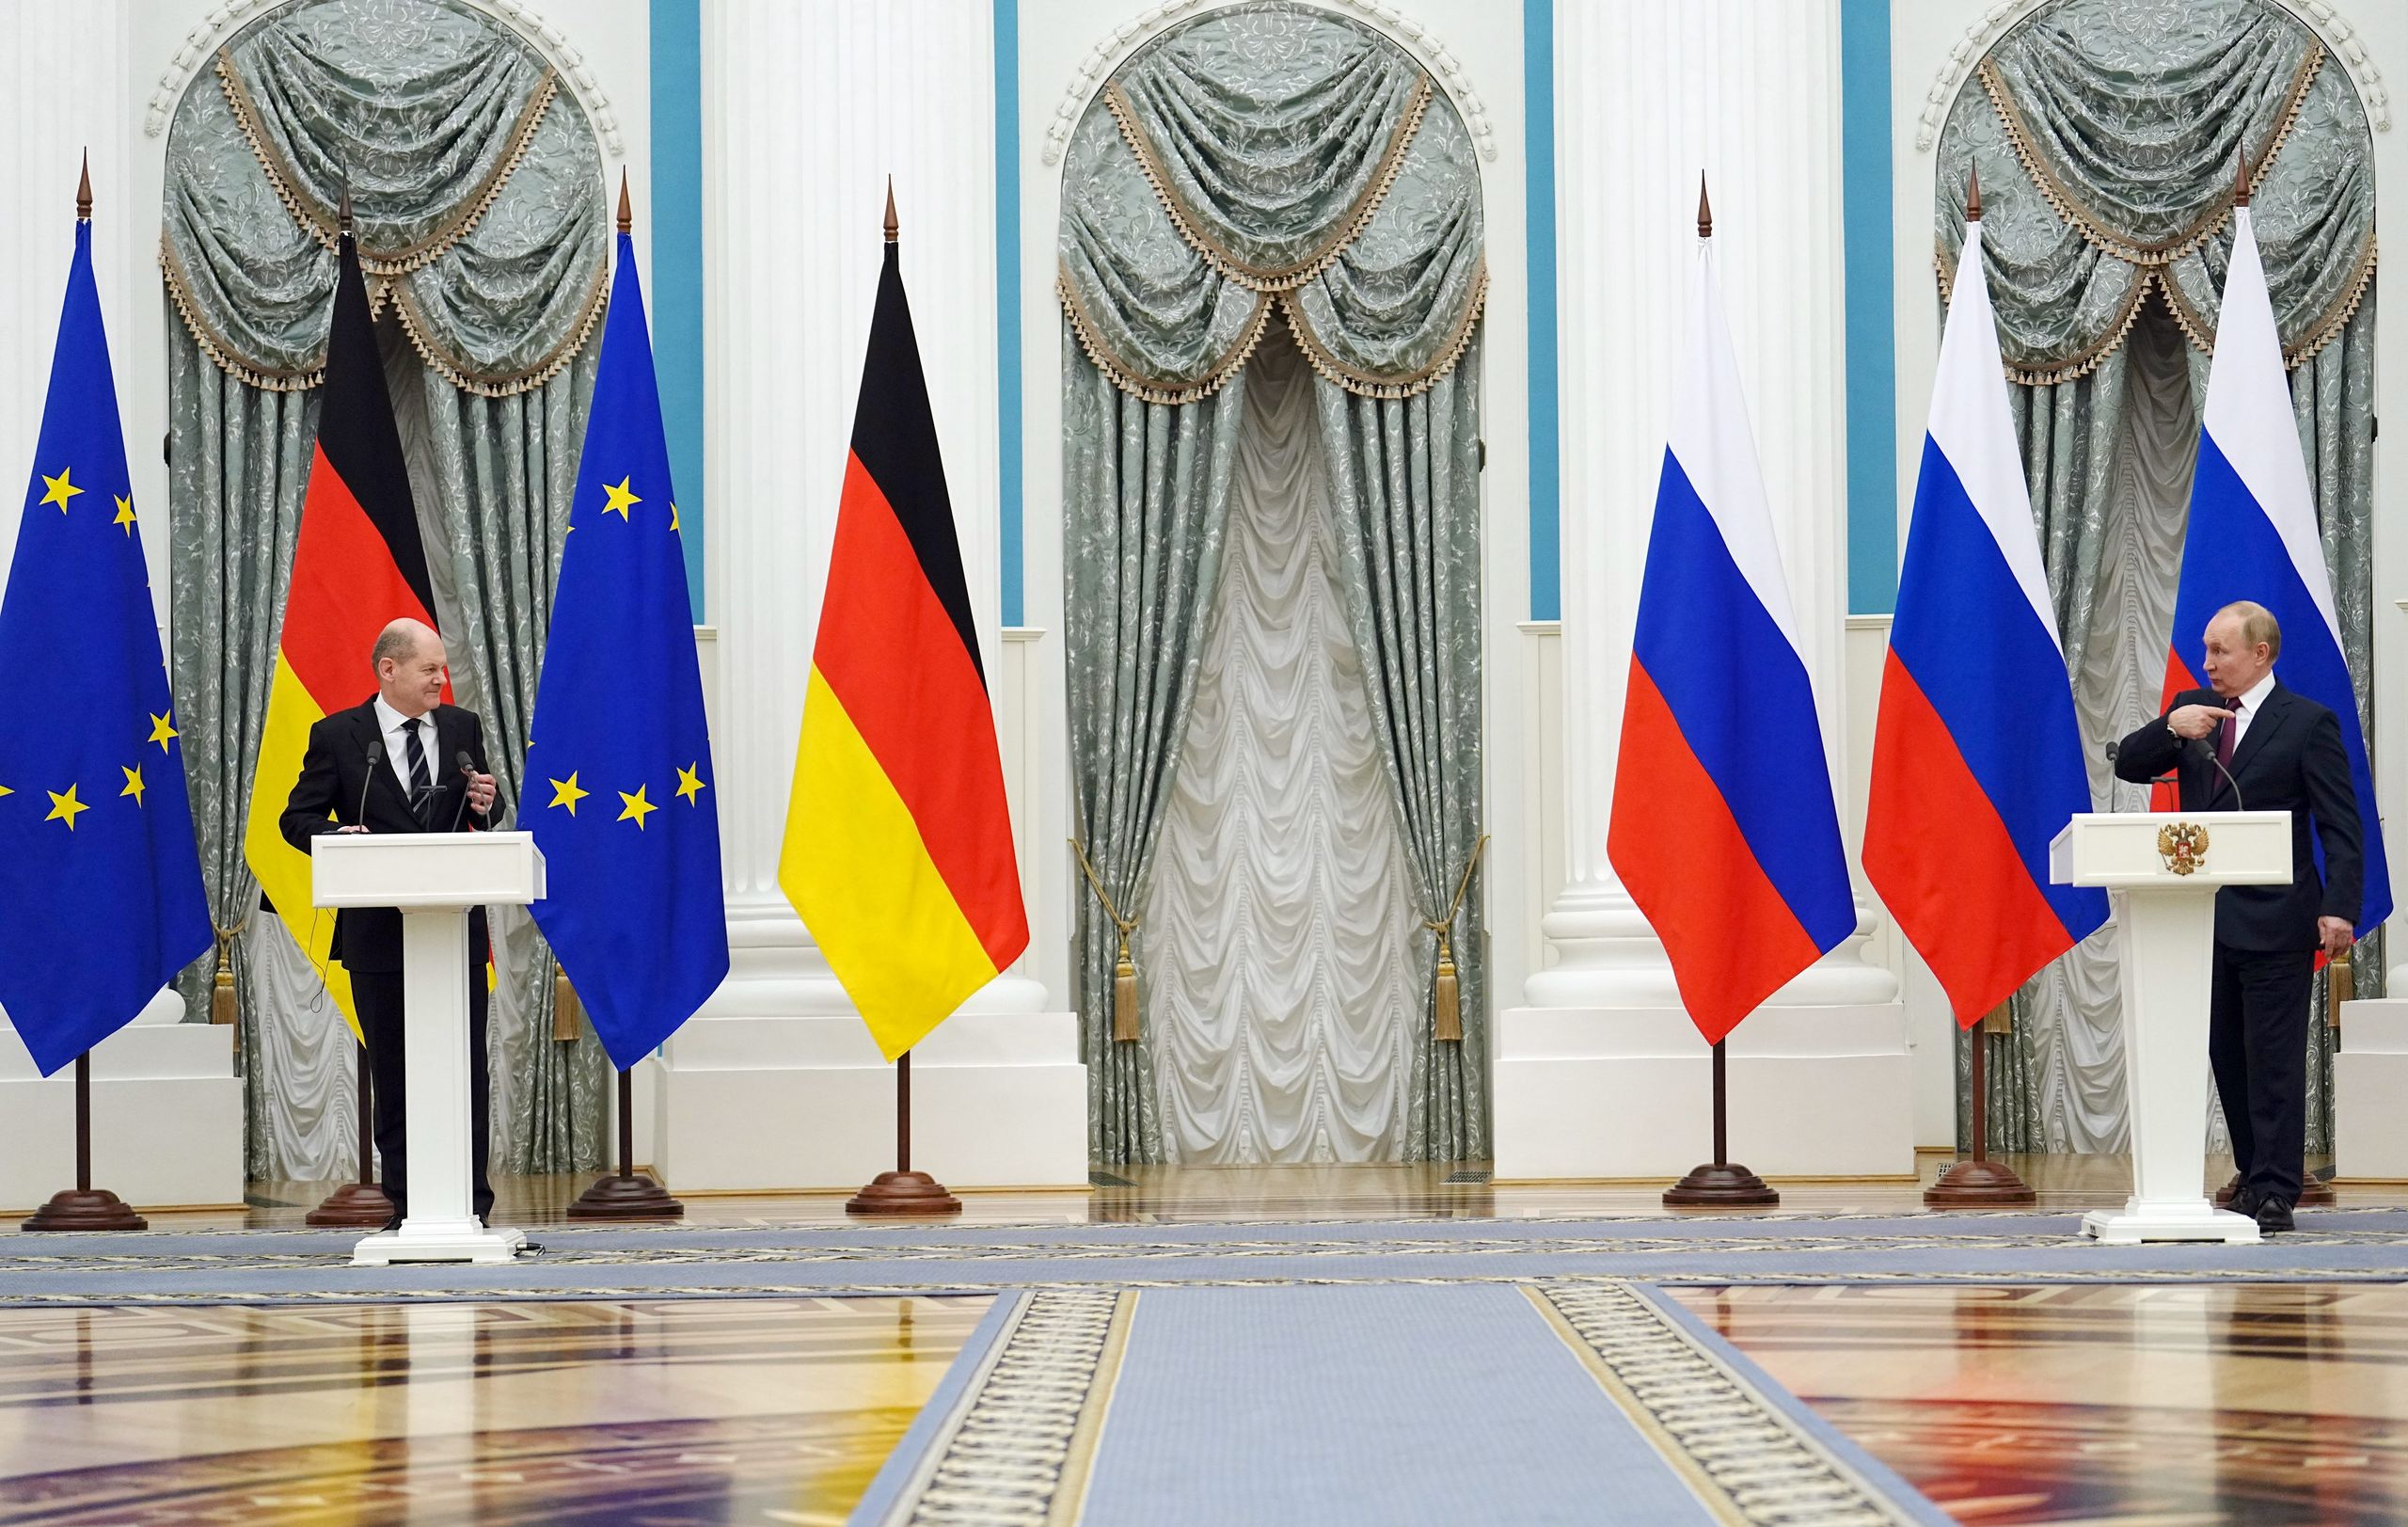 La intercepción de una llamada con secretos sobre la guerra de Ucrania tensa las relaciones entre Rusia y Alemania